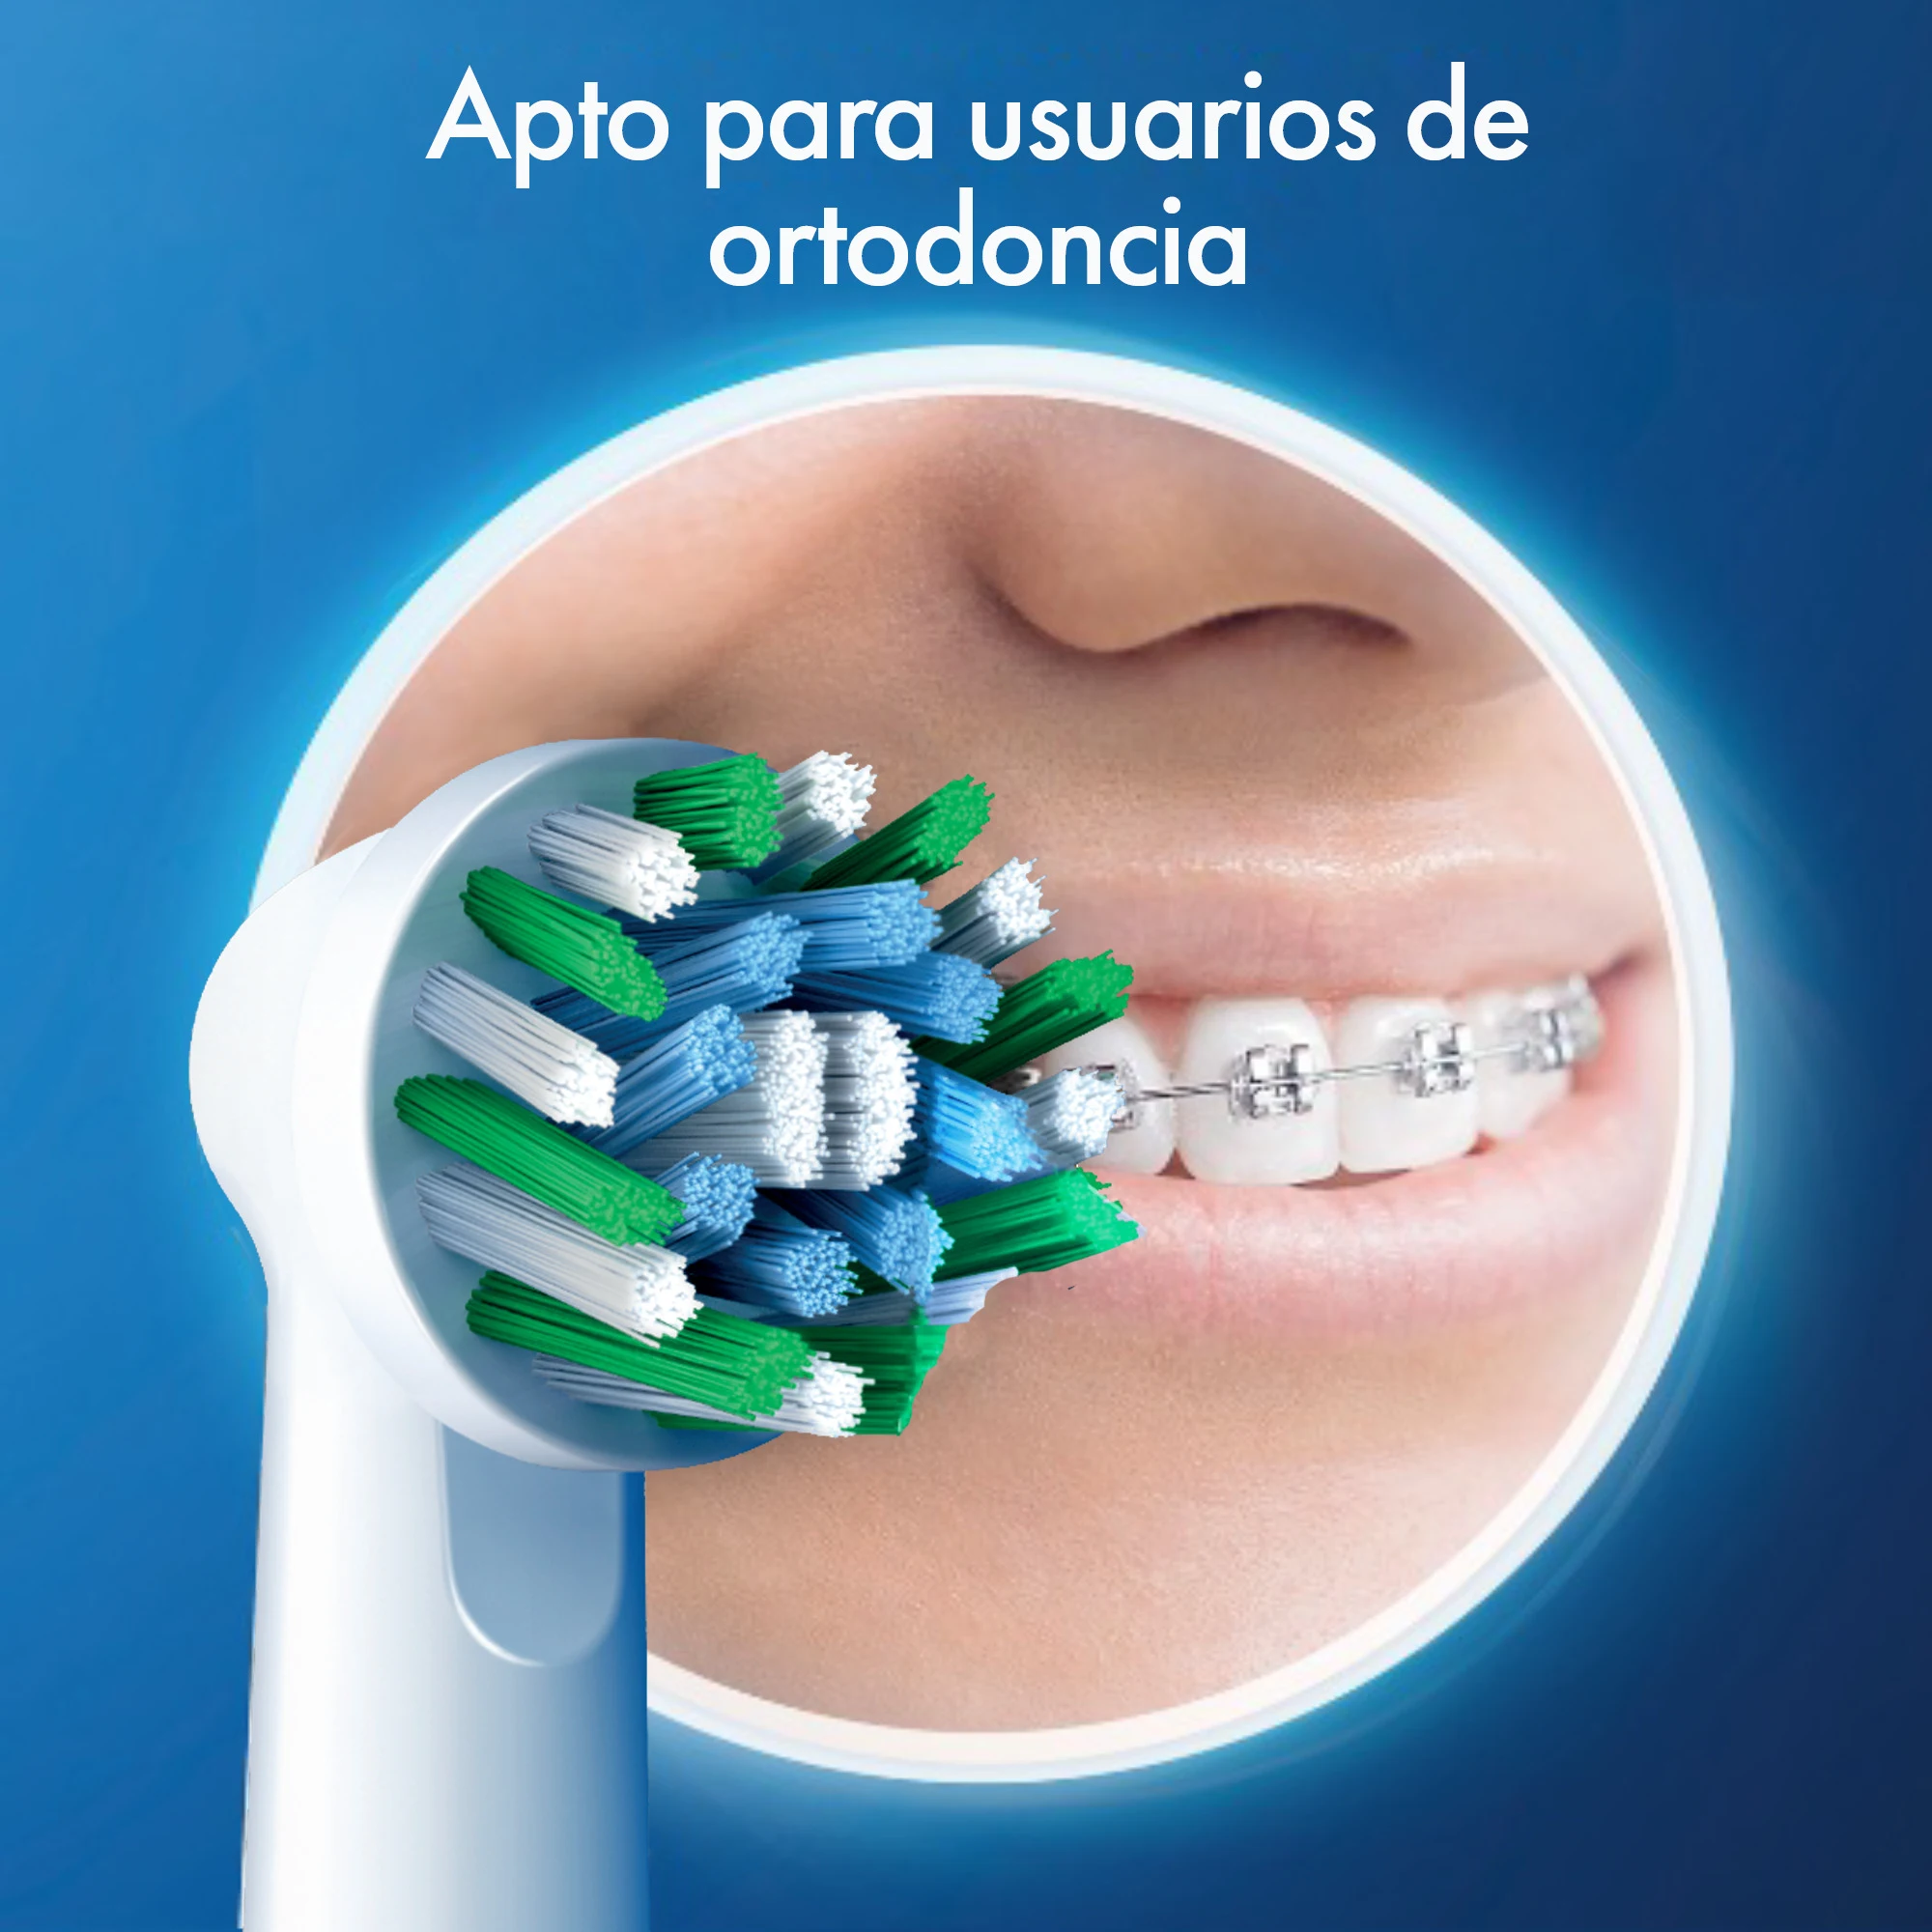 Cepillo eléctrico  Oral-B Pro Series 1, 2 Cabezales, Temporizador, 3  Modos, Tecnología 3D, Azul